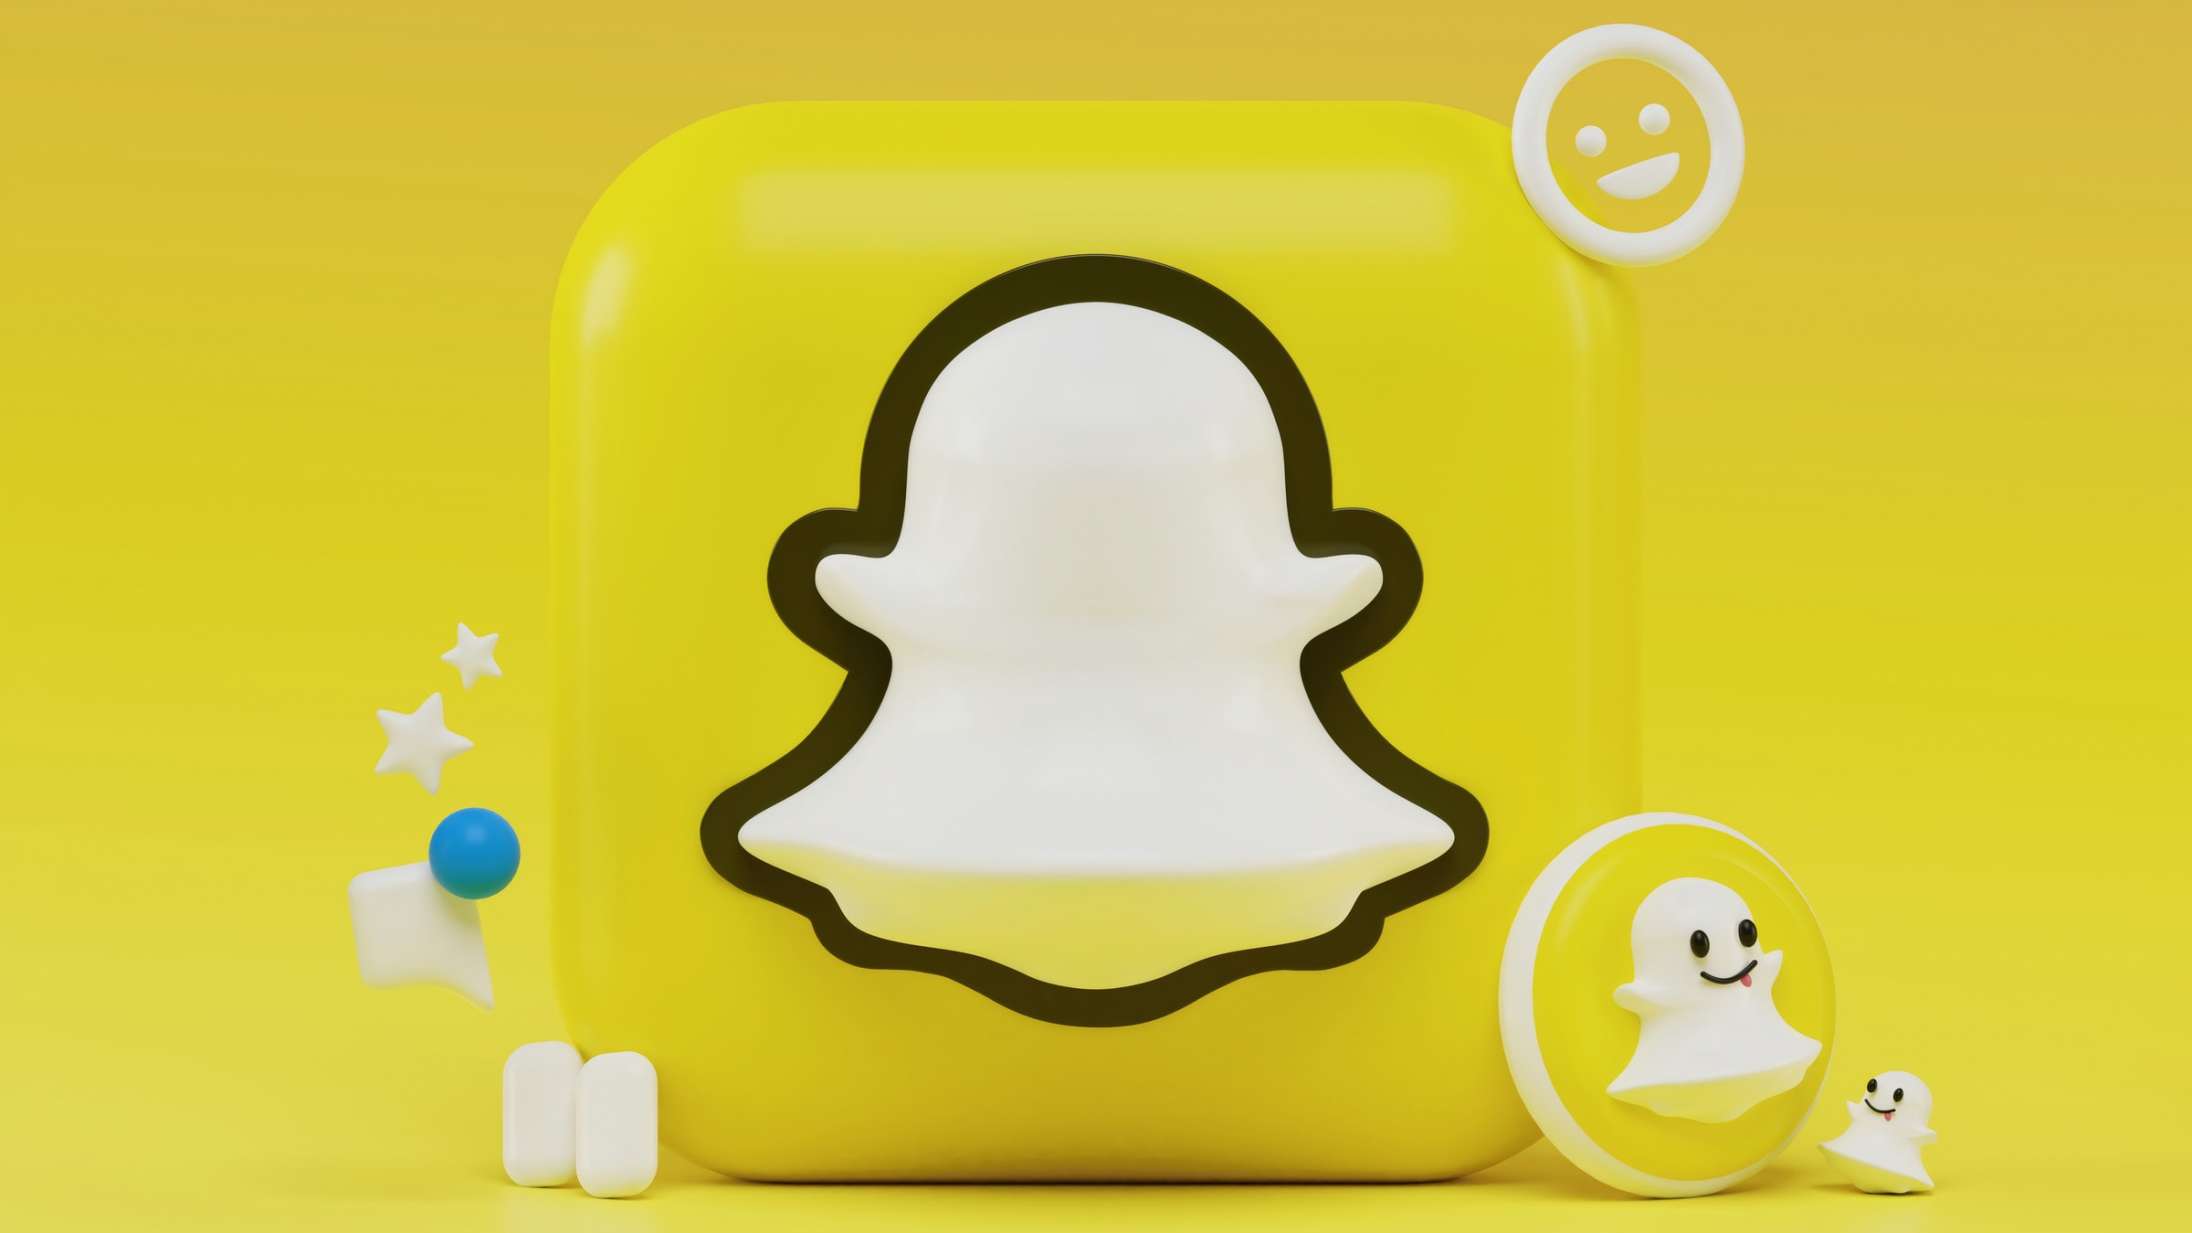 Nu kan du snart skifte dit pinlige brugernavn på Snapchat